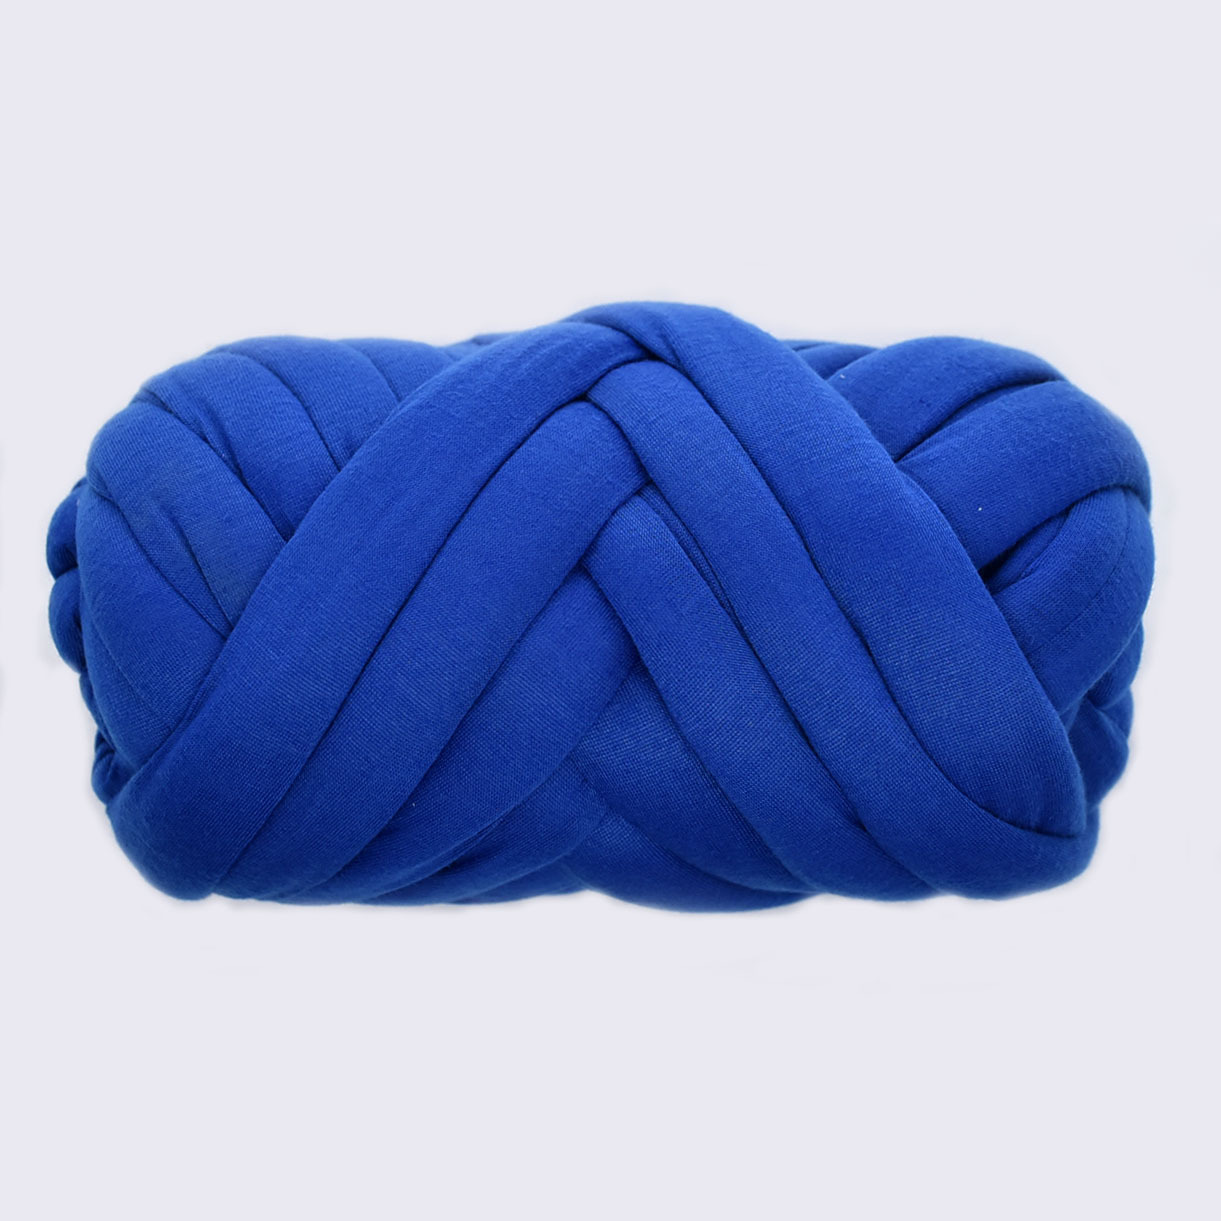 Super Soft Giant Crochet Polyester Hand Knitting Tube Yarn Bag